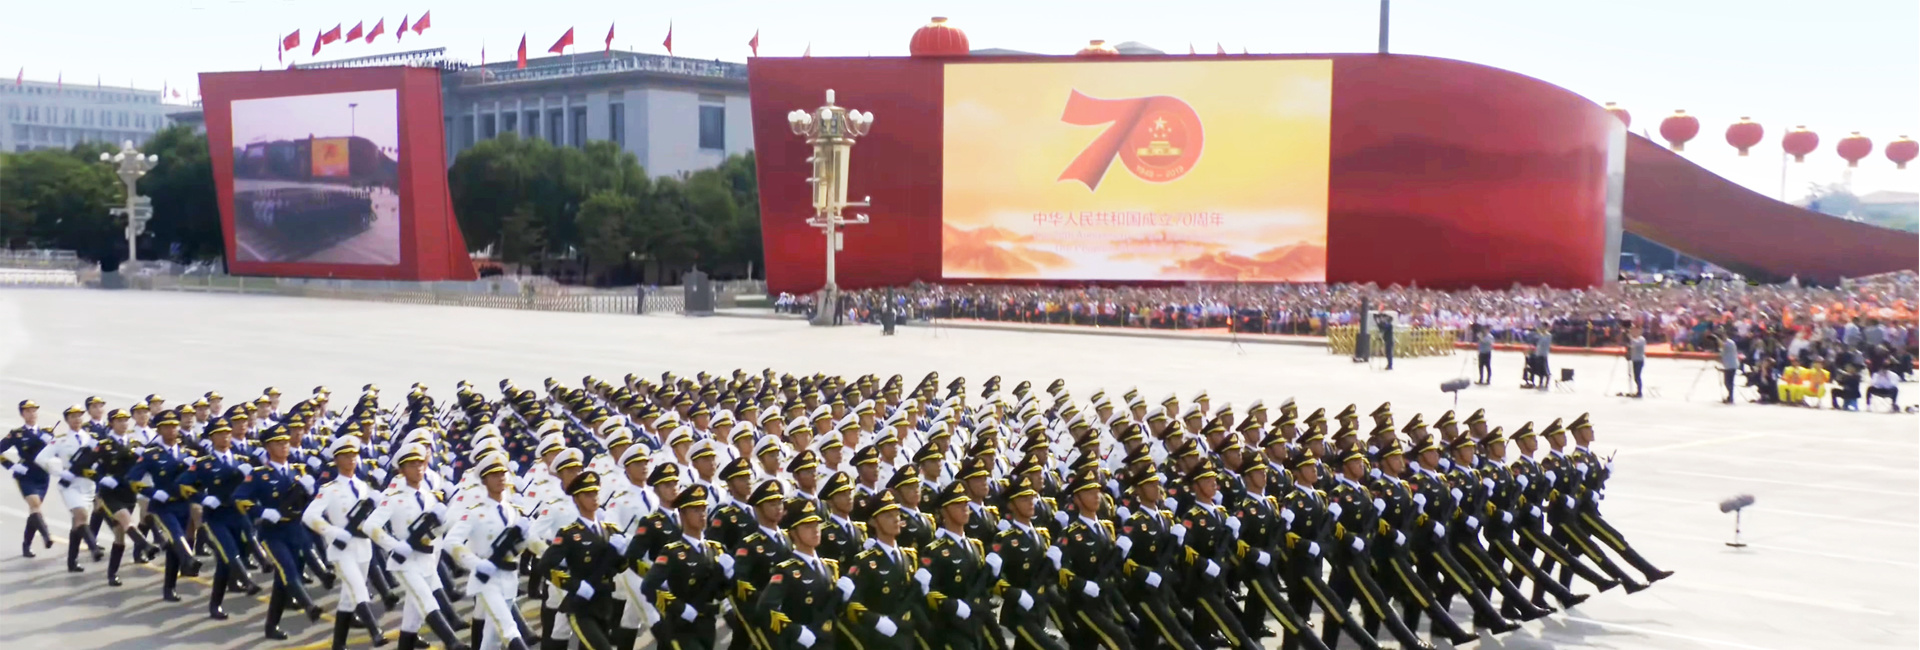 慶祝中華人民共和國成立70周年大型活動視覺背景